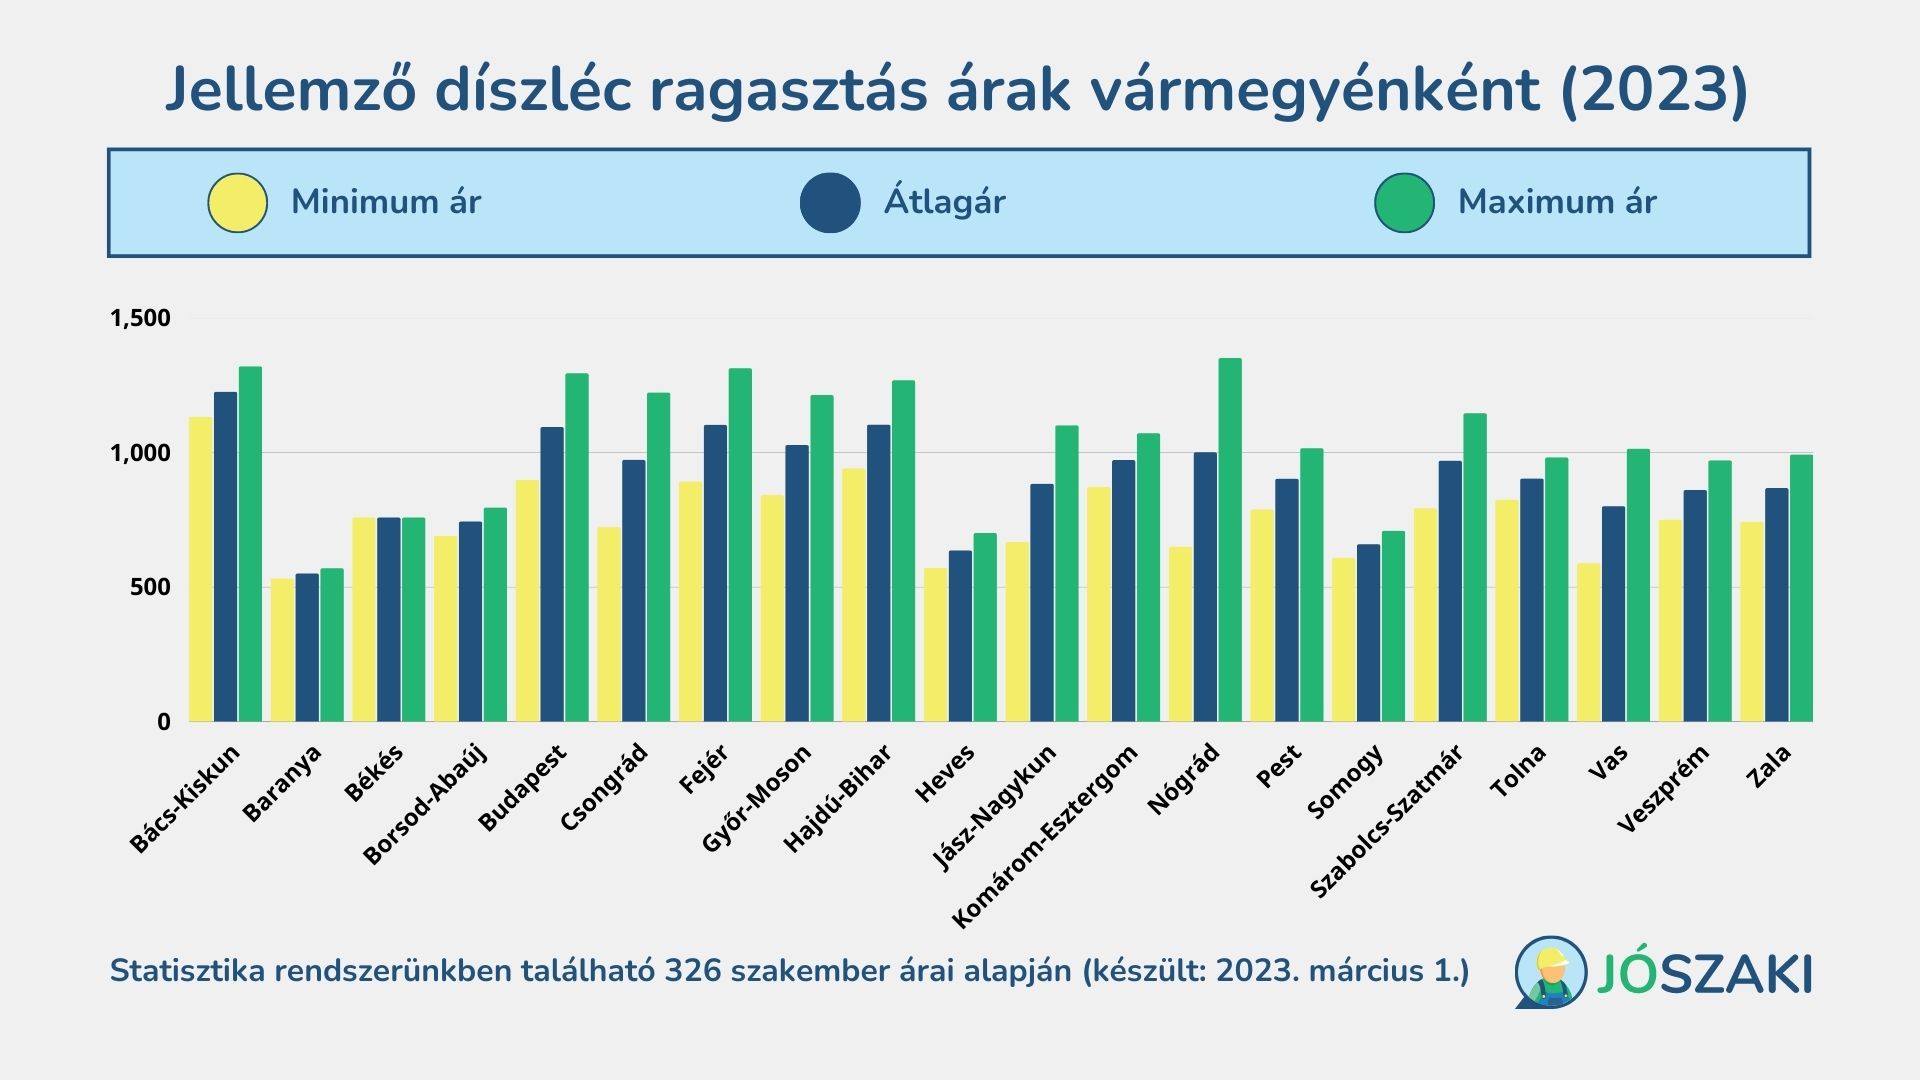 A díszléc ragasztás árának átlagai 2023 márciusban Magyarországon vármegyénként